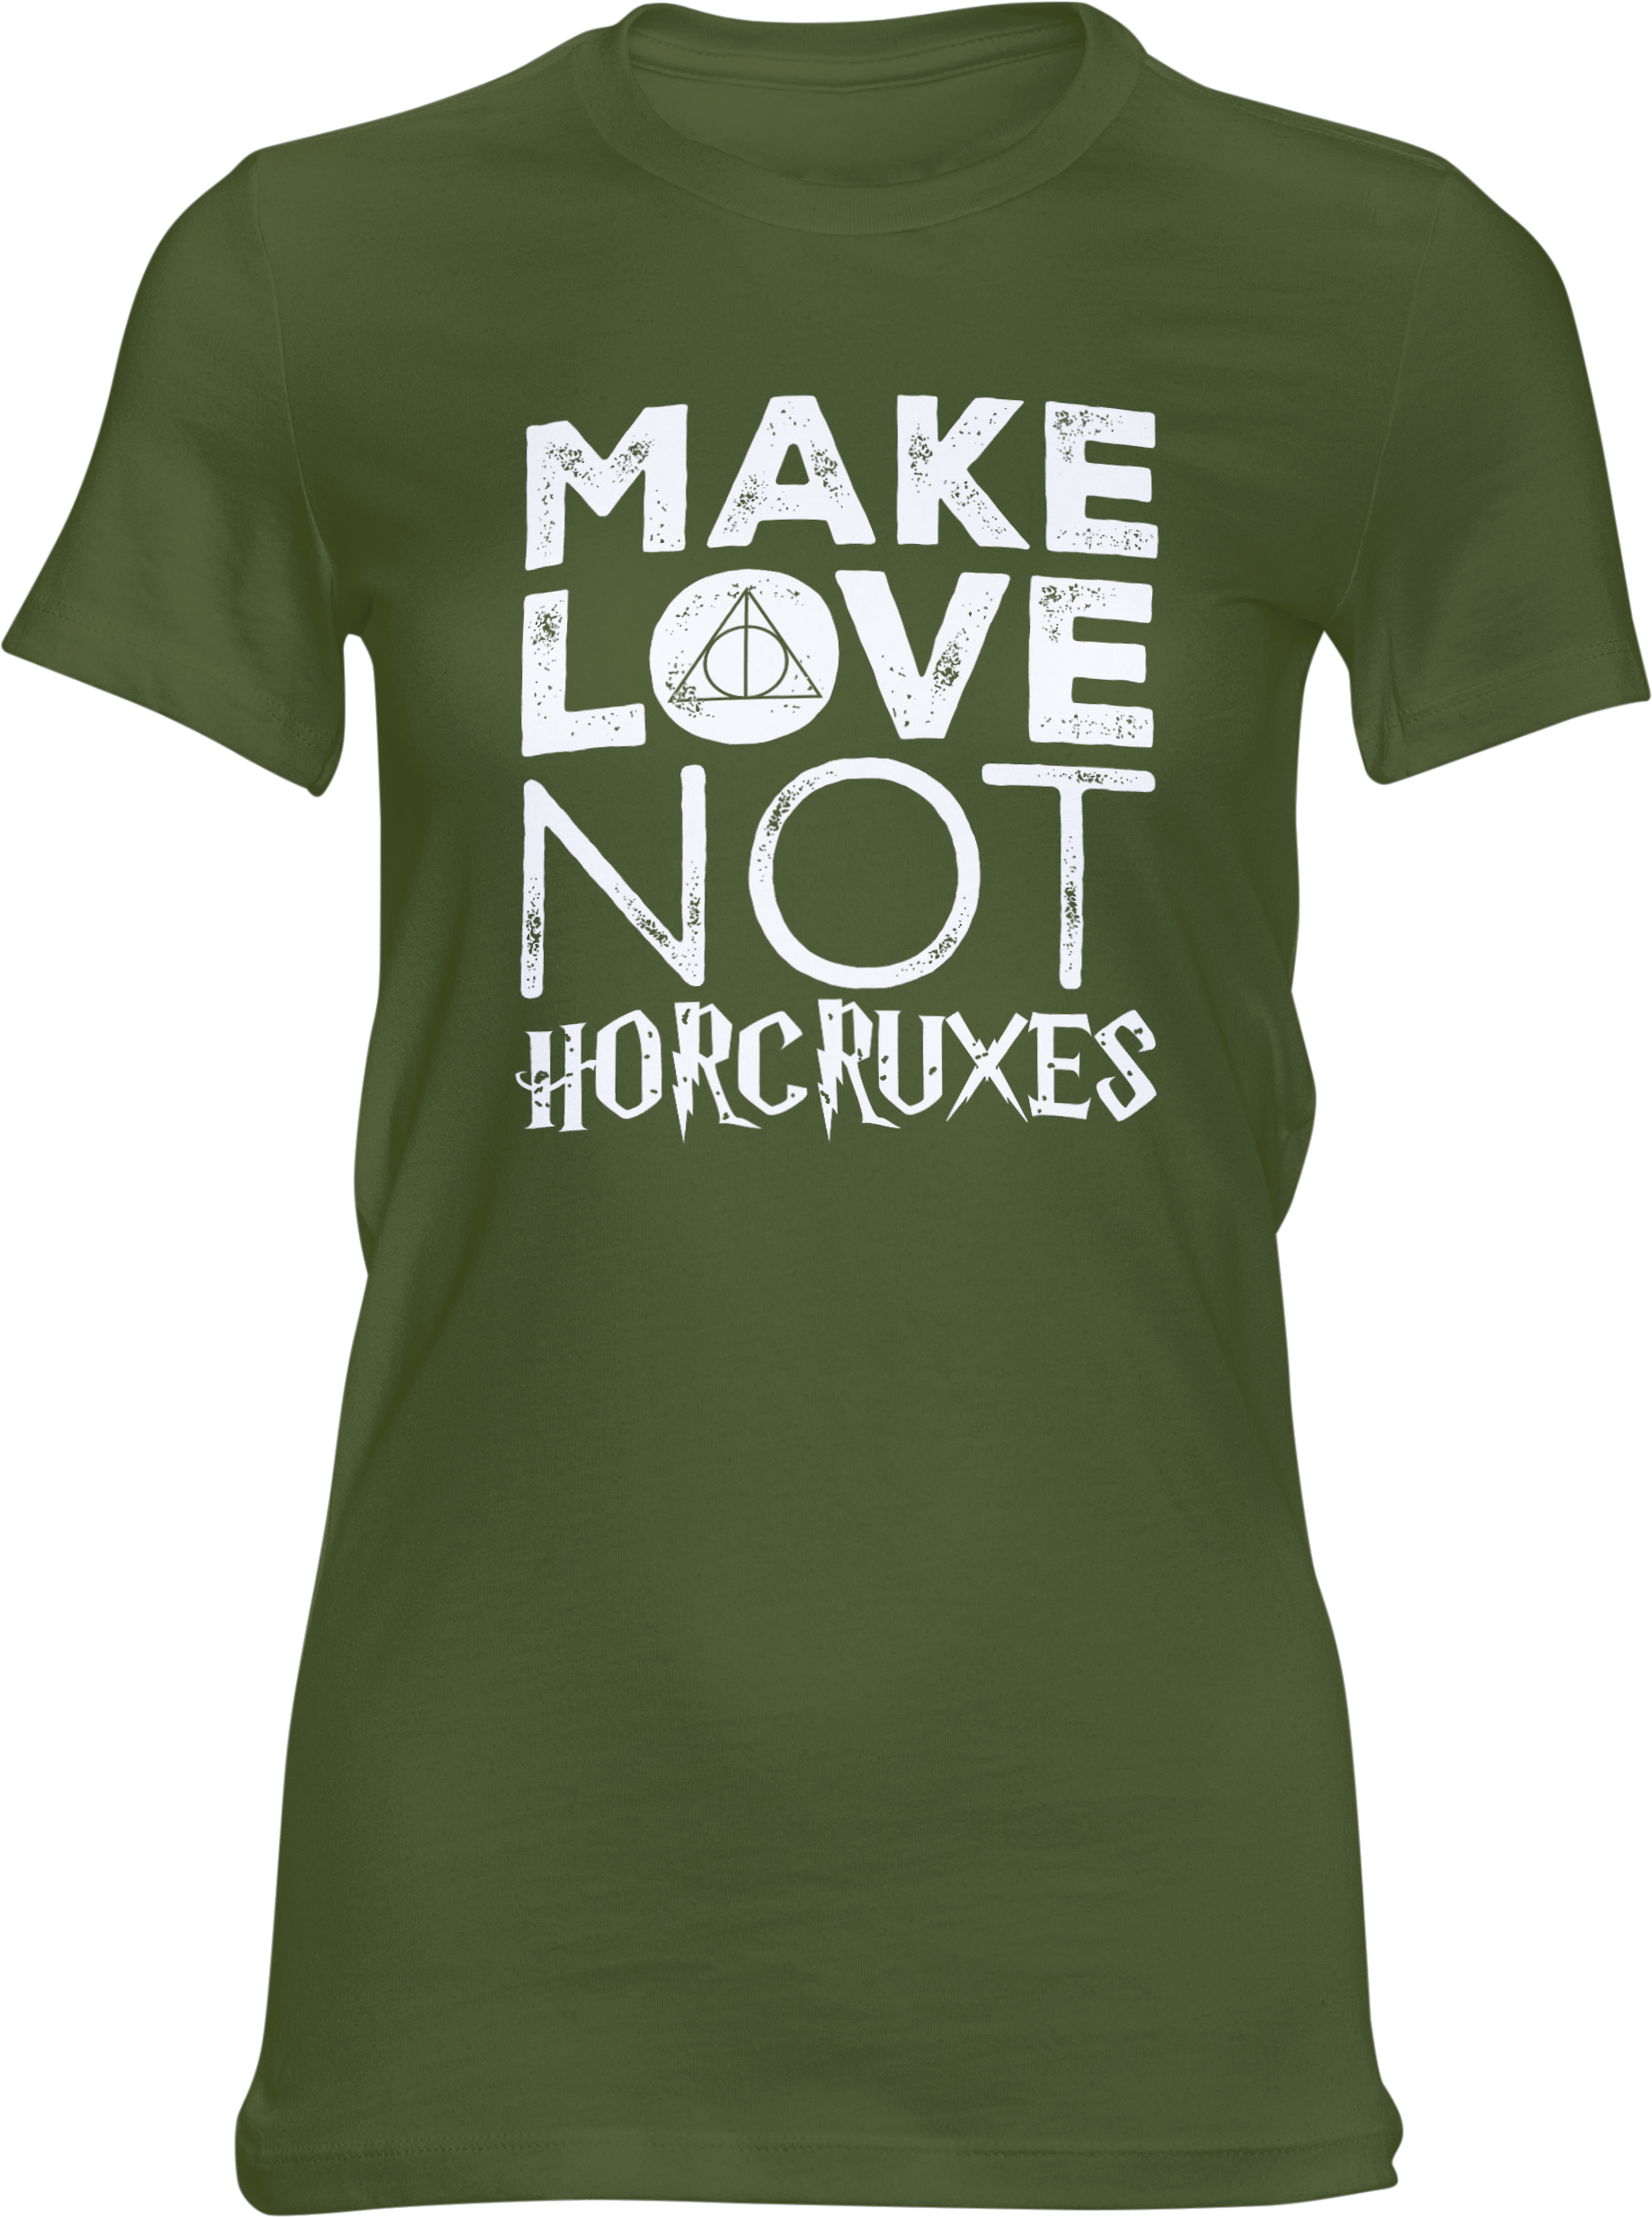 Motiv-Shirt – Make Love Not Horcruxes – Girlie-Shirt (grün)